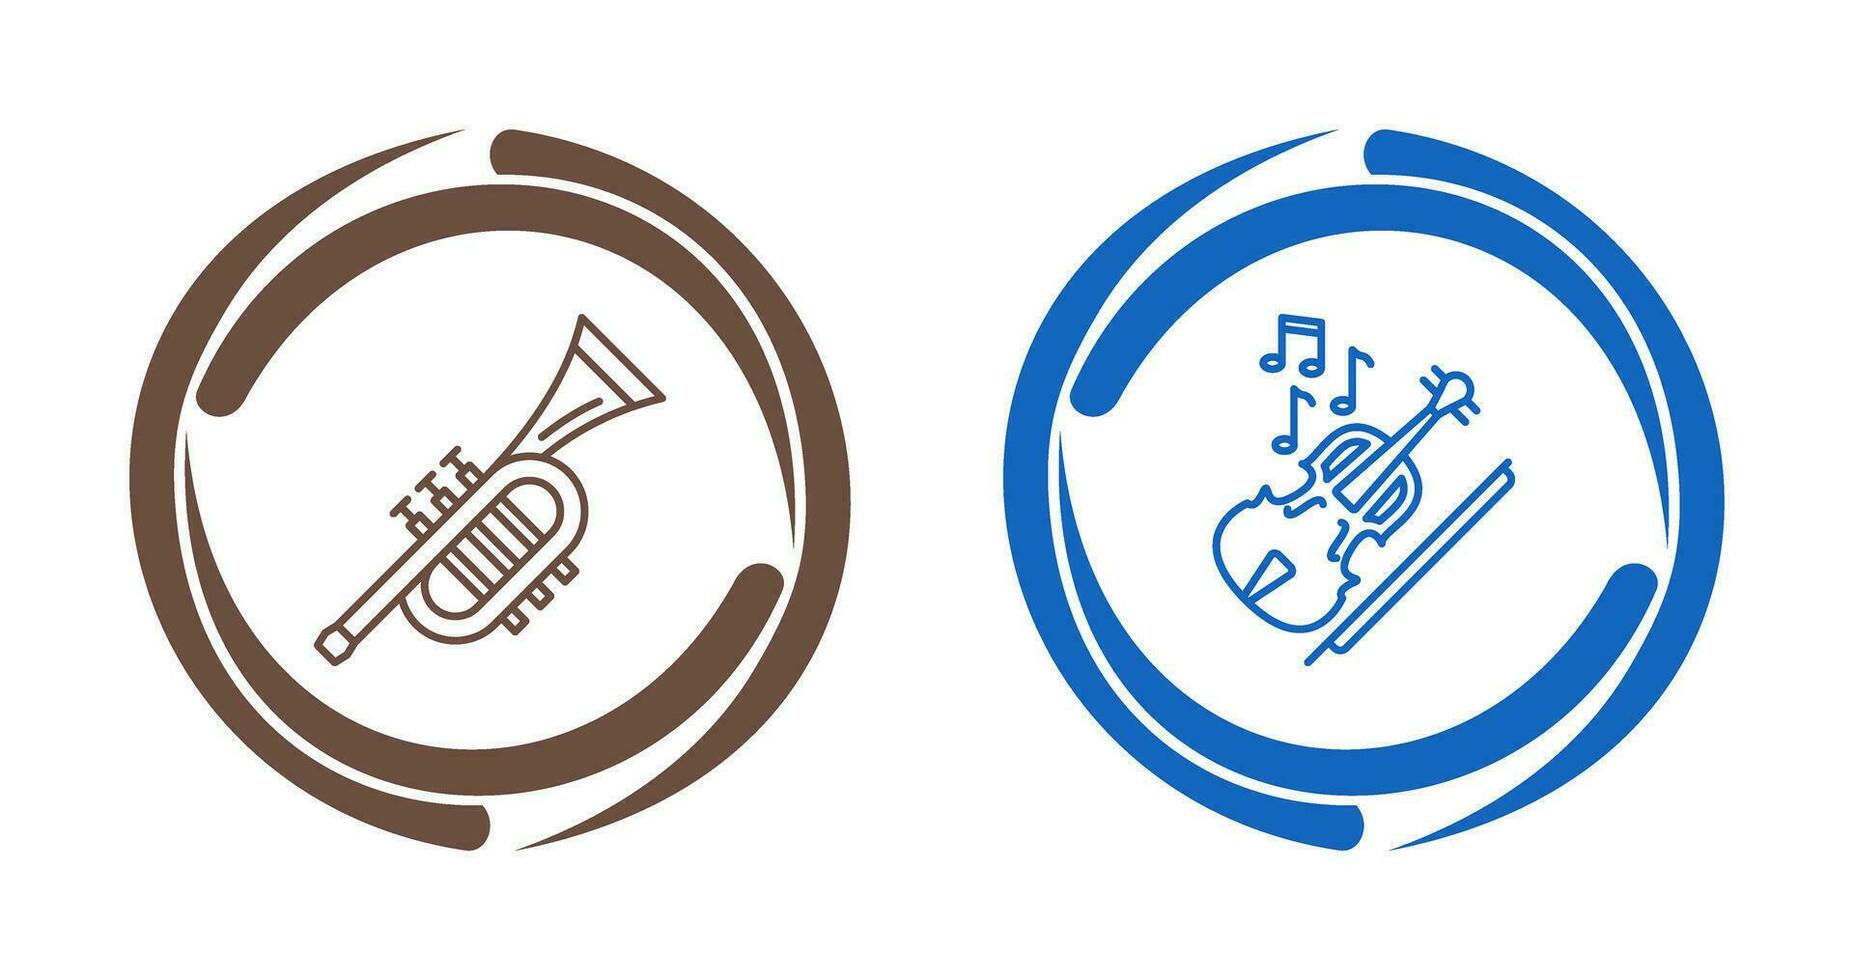 trumpet och fiol ikon vektor